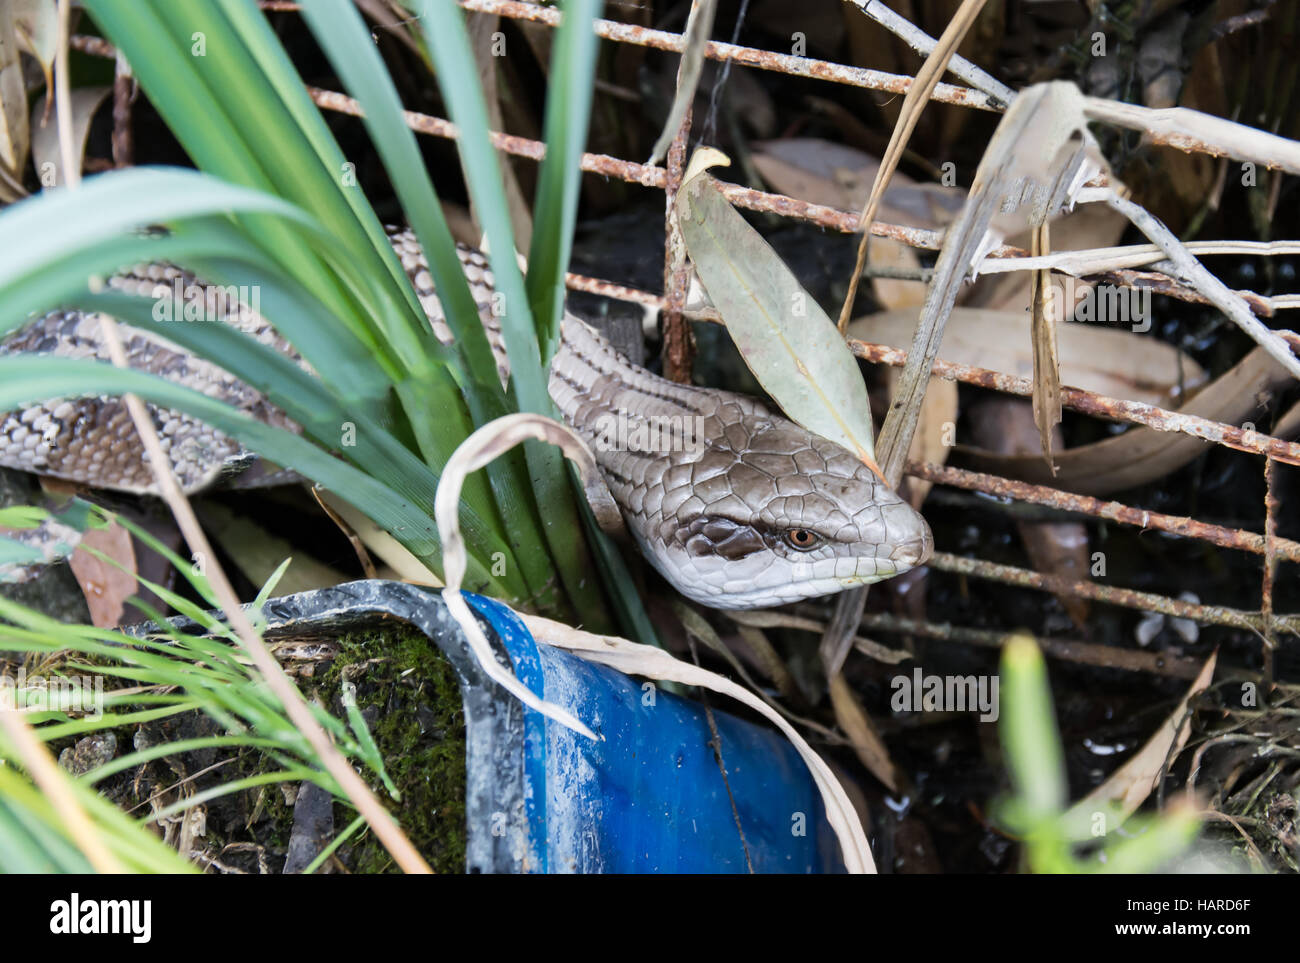 Blue Tongue Lizard Hiding in Garden Waste Stock Photo